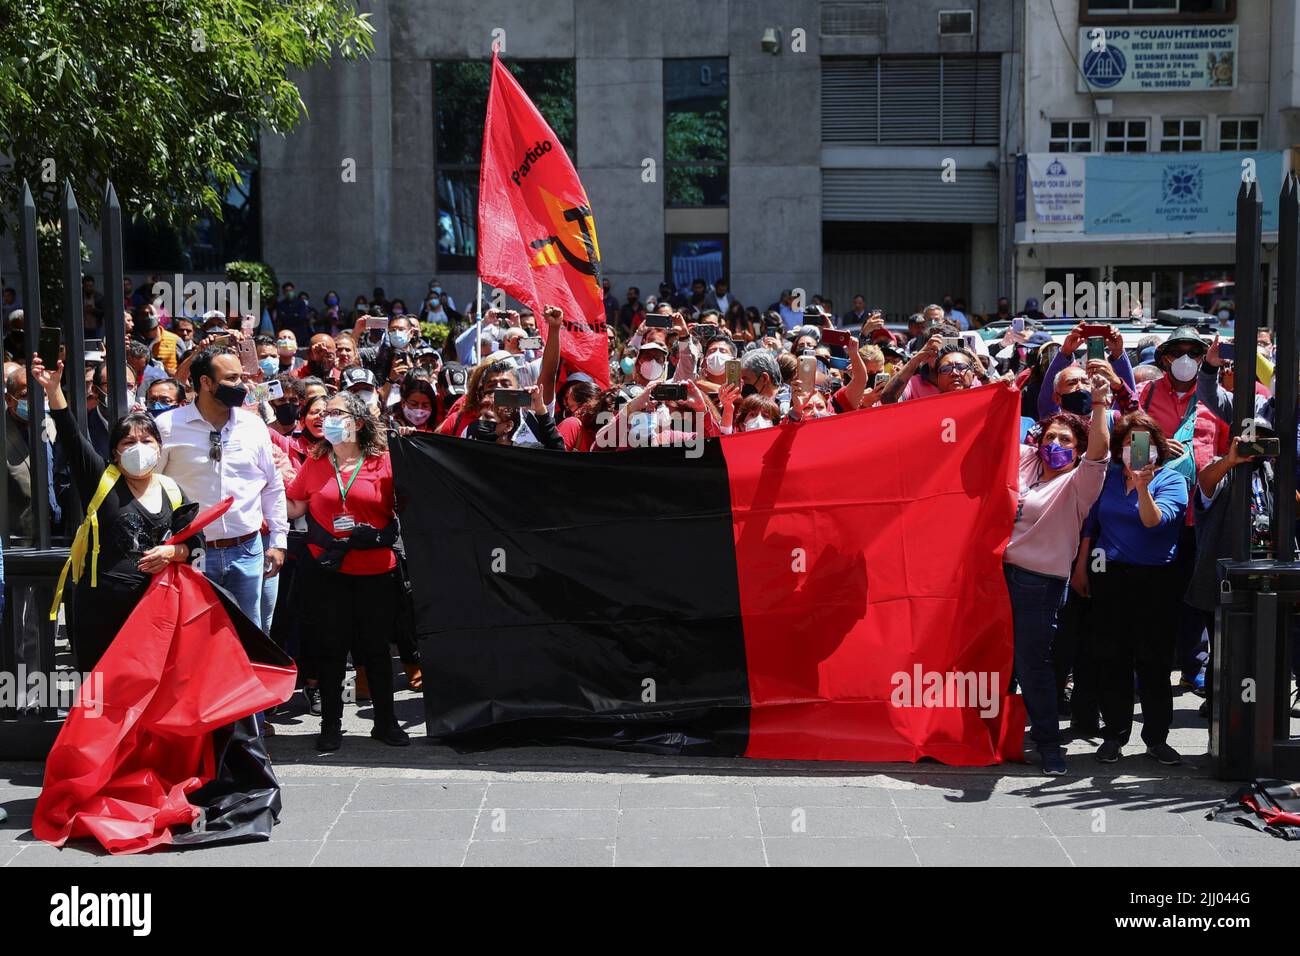 Los empleados tienen una bandera mientras protestan fuera de la sede de Telmex después de que el sindicato de la compañía se declarara en huelga después de no llegar a un acuerdo con la compañía sobre un nuevo convenio colectivo, en Ciudad de México, México, el 21 de julio de 2022. REUTERS/Edgard Garrido Foto de stock